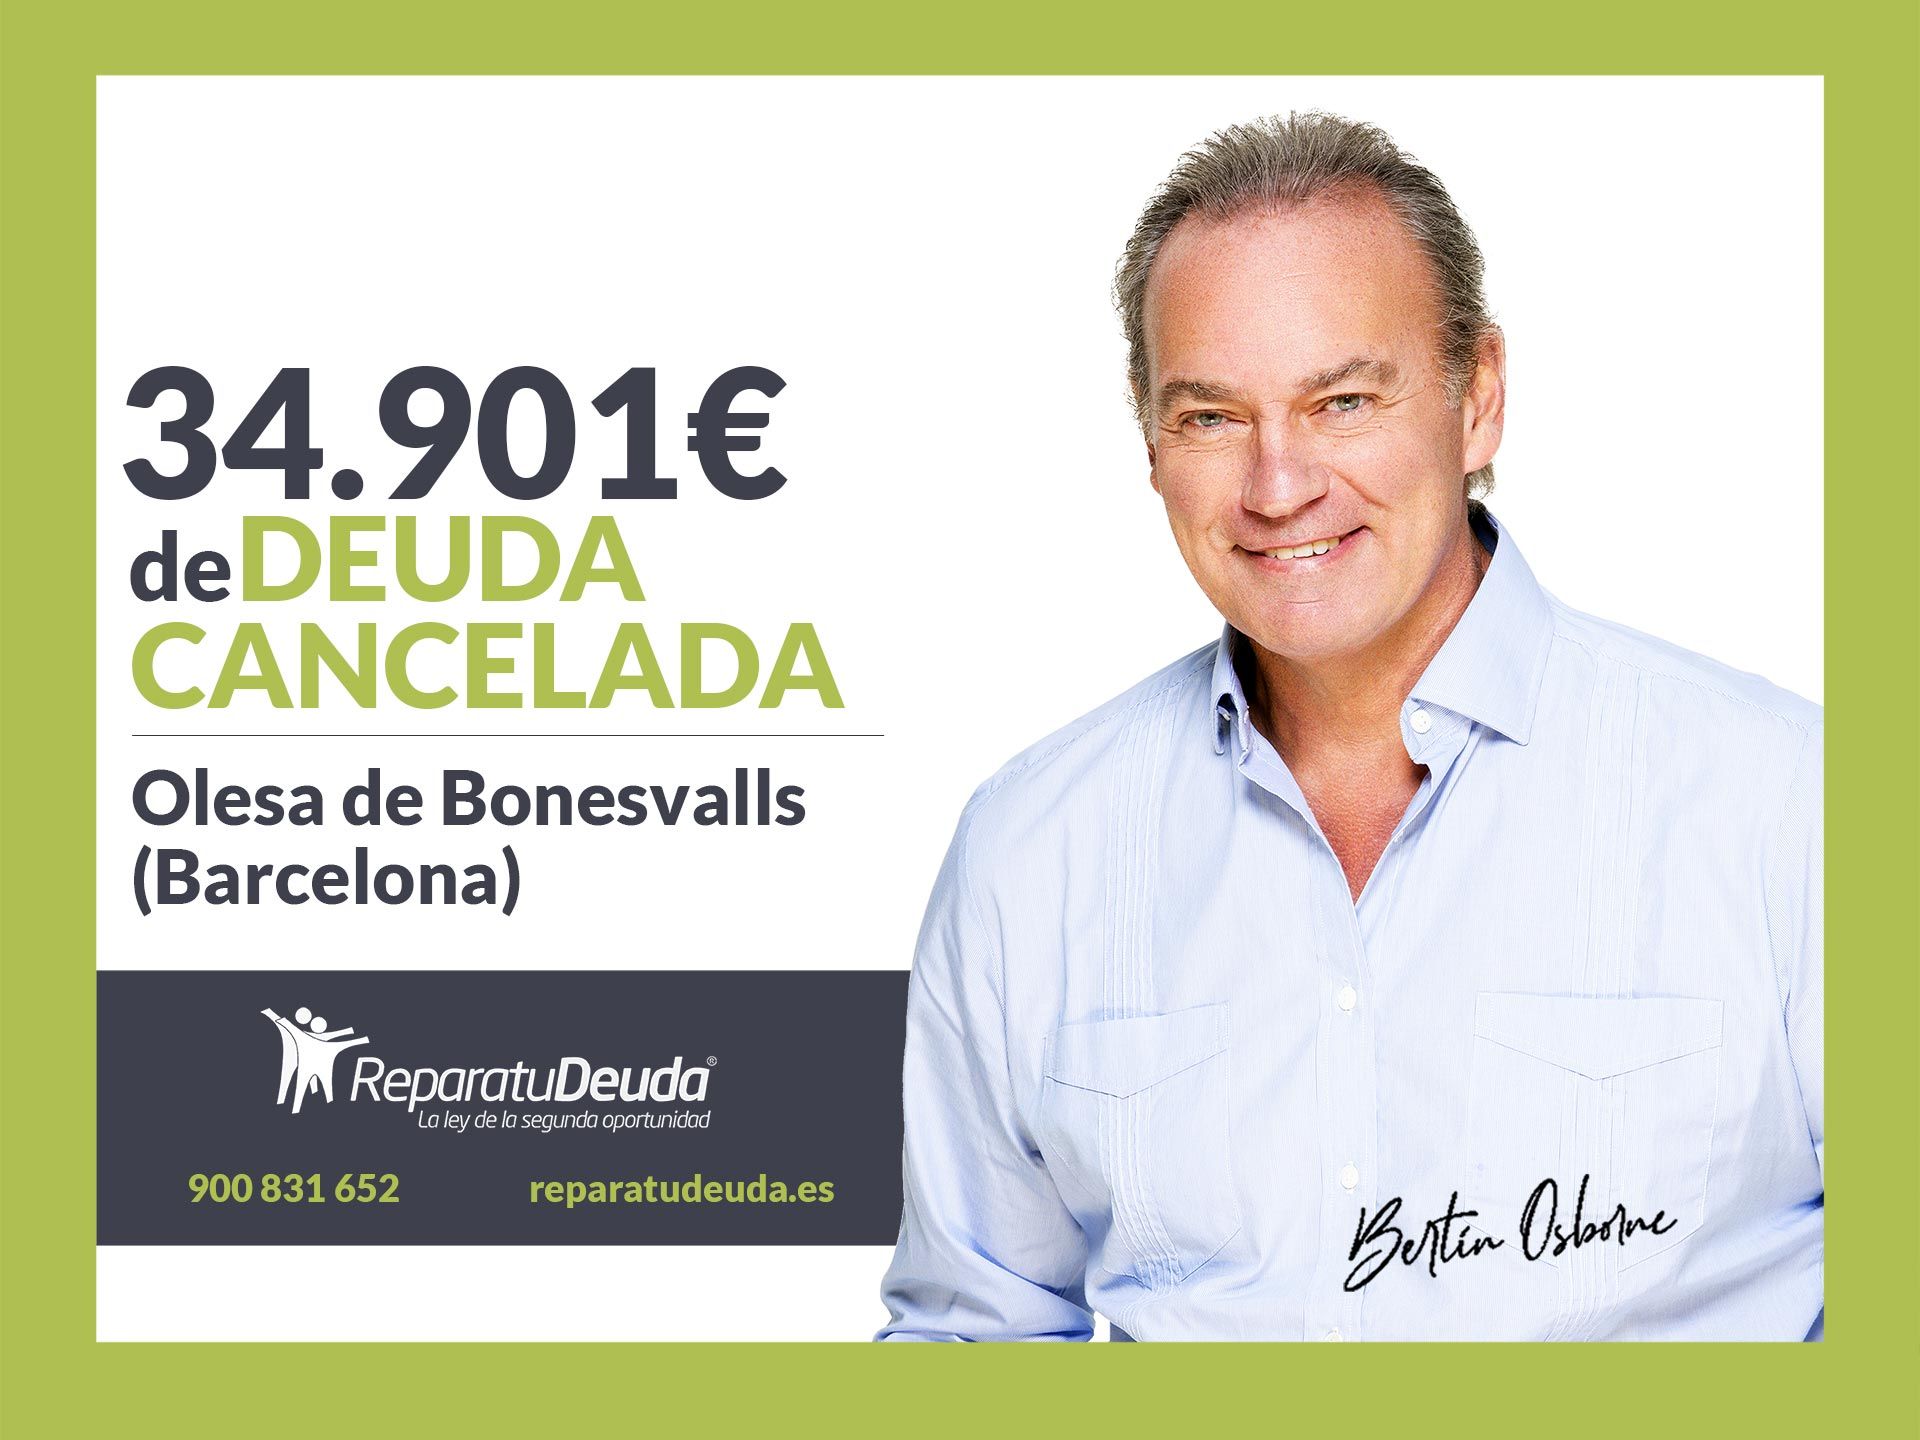 Repara tu Deuda Abogados cancela 34.901? en Olesa de Bonesvalls (Barcelona) con la Ley de Segunda Oportunidad